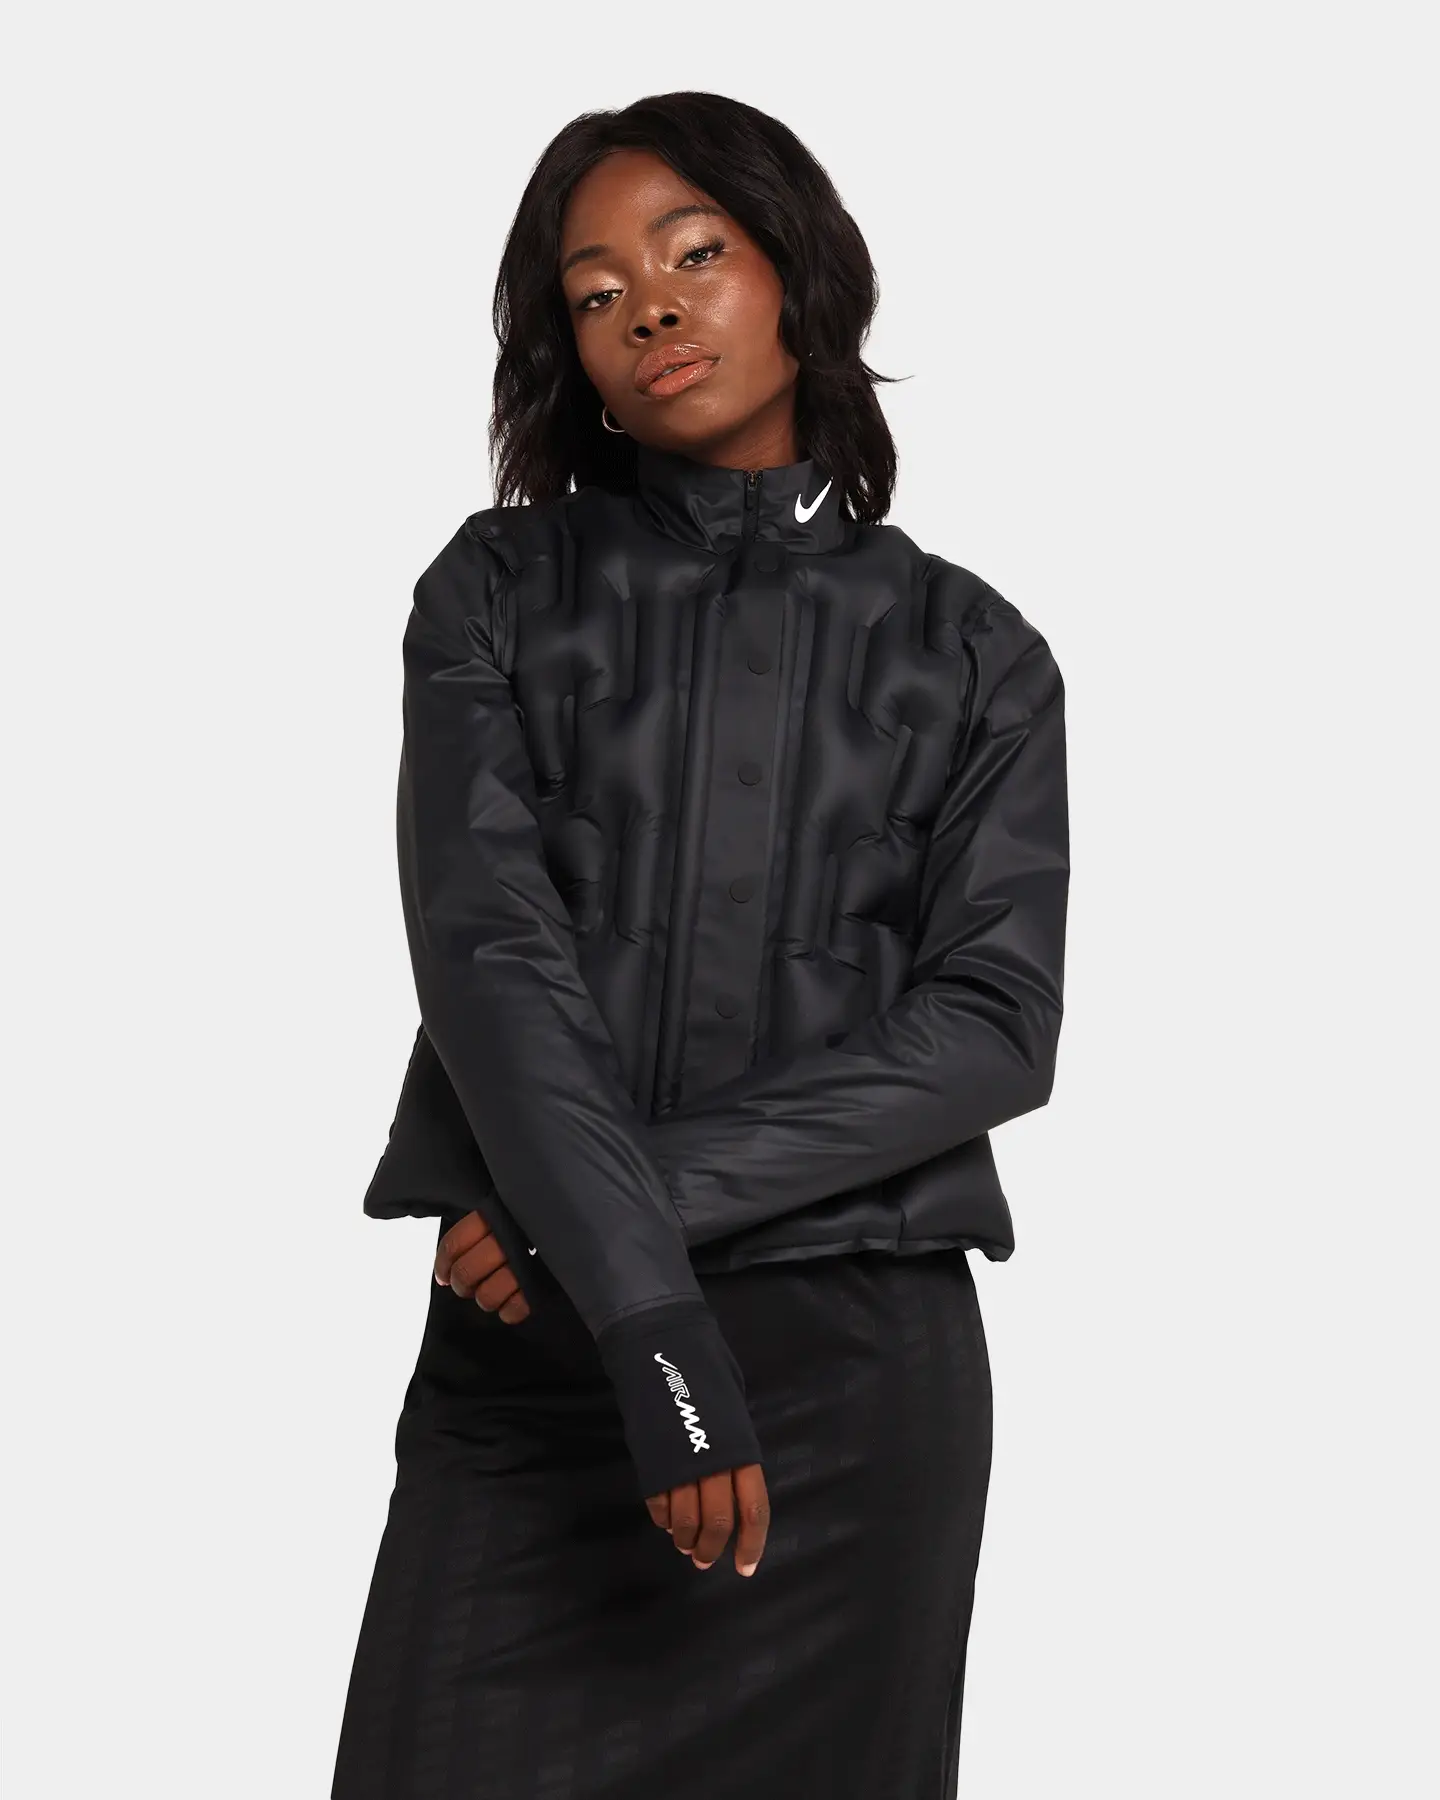 Nike Women's Nike Sportswear Inflatable Jacket Black - Size 12 (L)